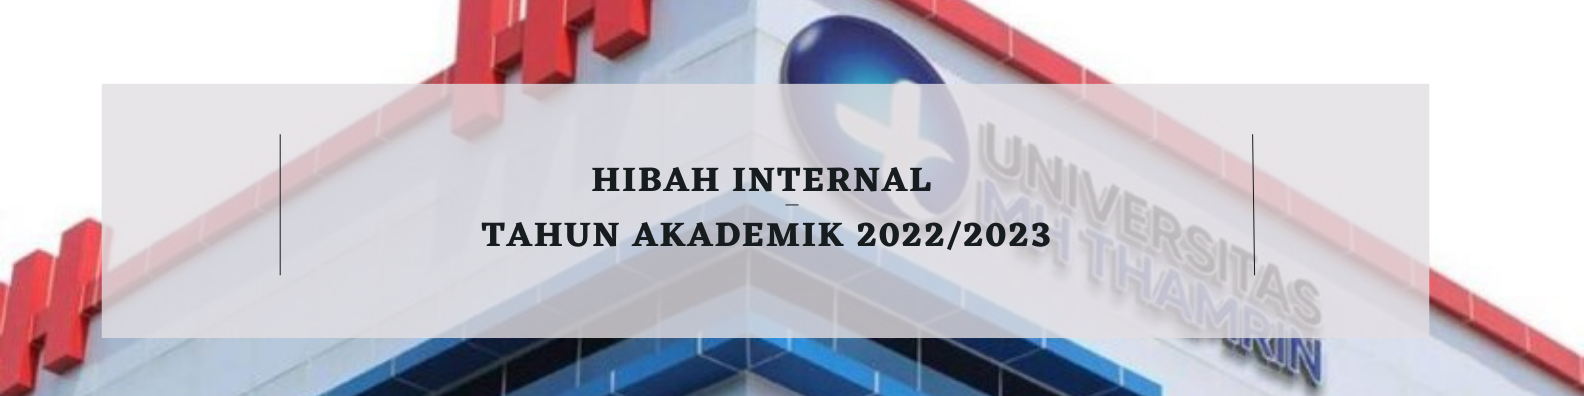 Pengumuman Hibah Internal Tahun Akademik 2022/2023